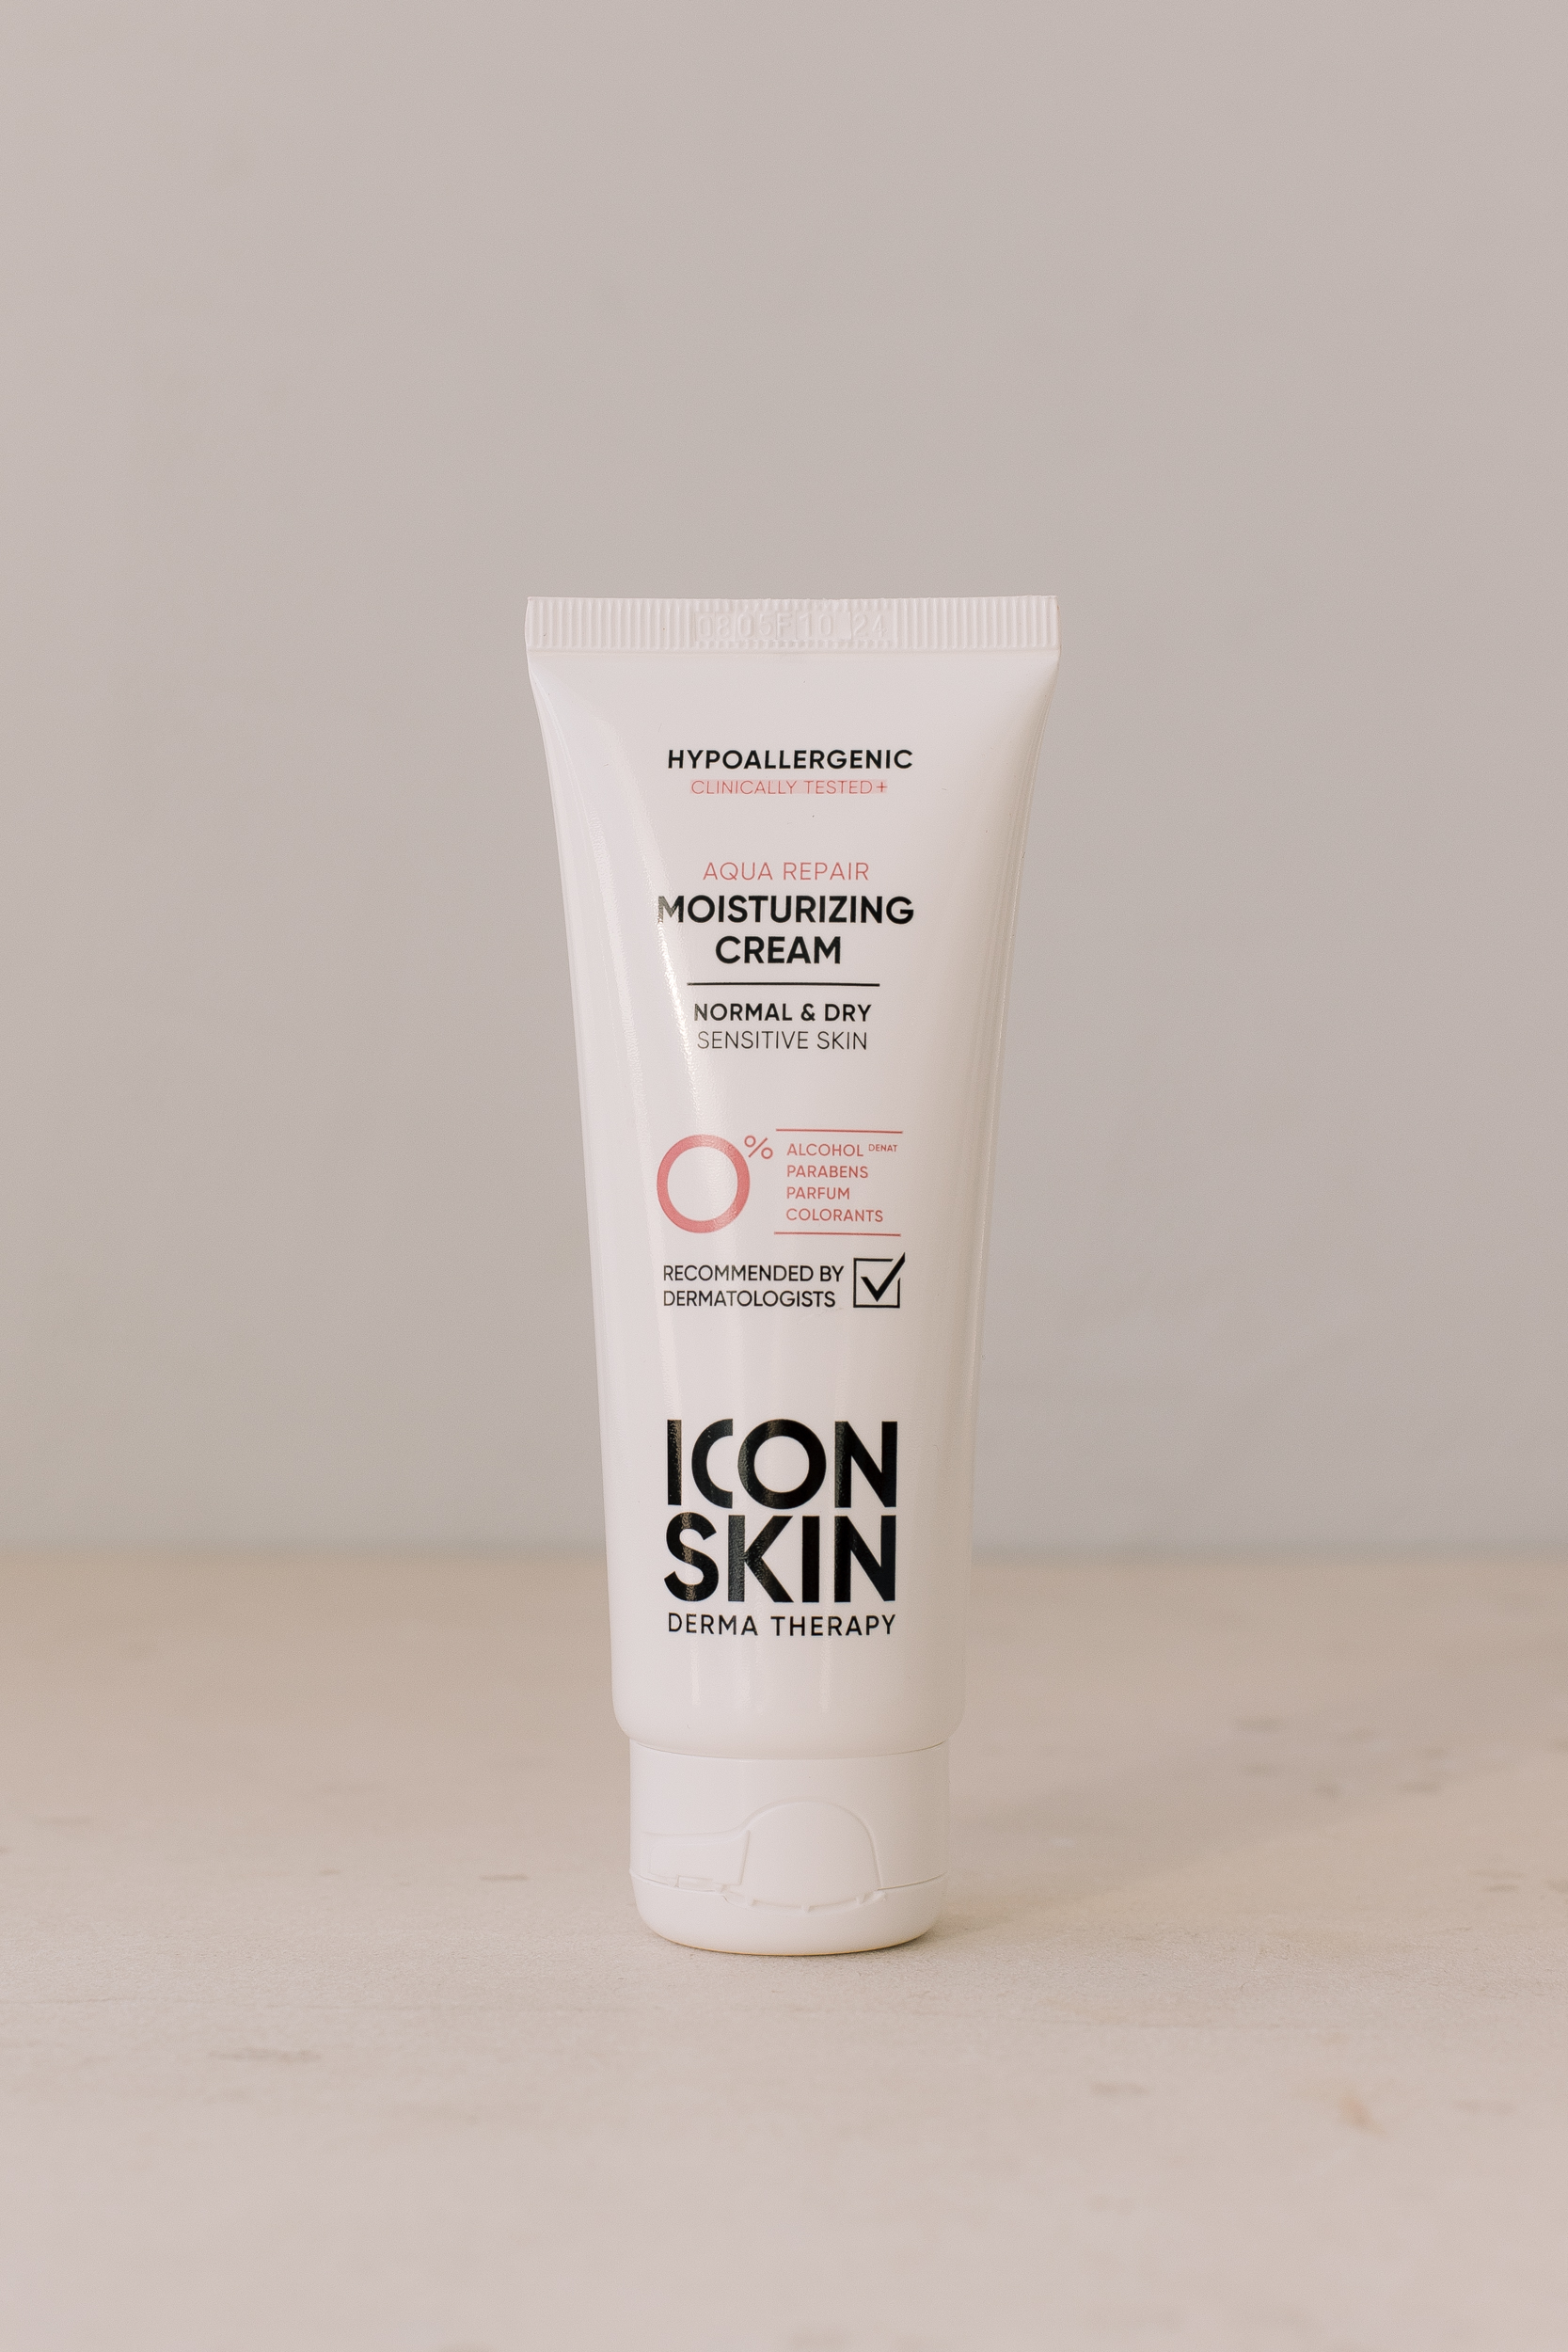 Увлажняющий гипоаллергенный крем для нормальной и сухой кожи ICON SKIN Aqua Repair Moisturizing Cream 75ml